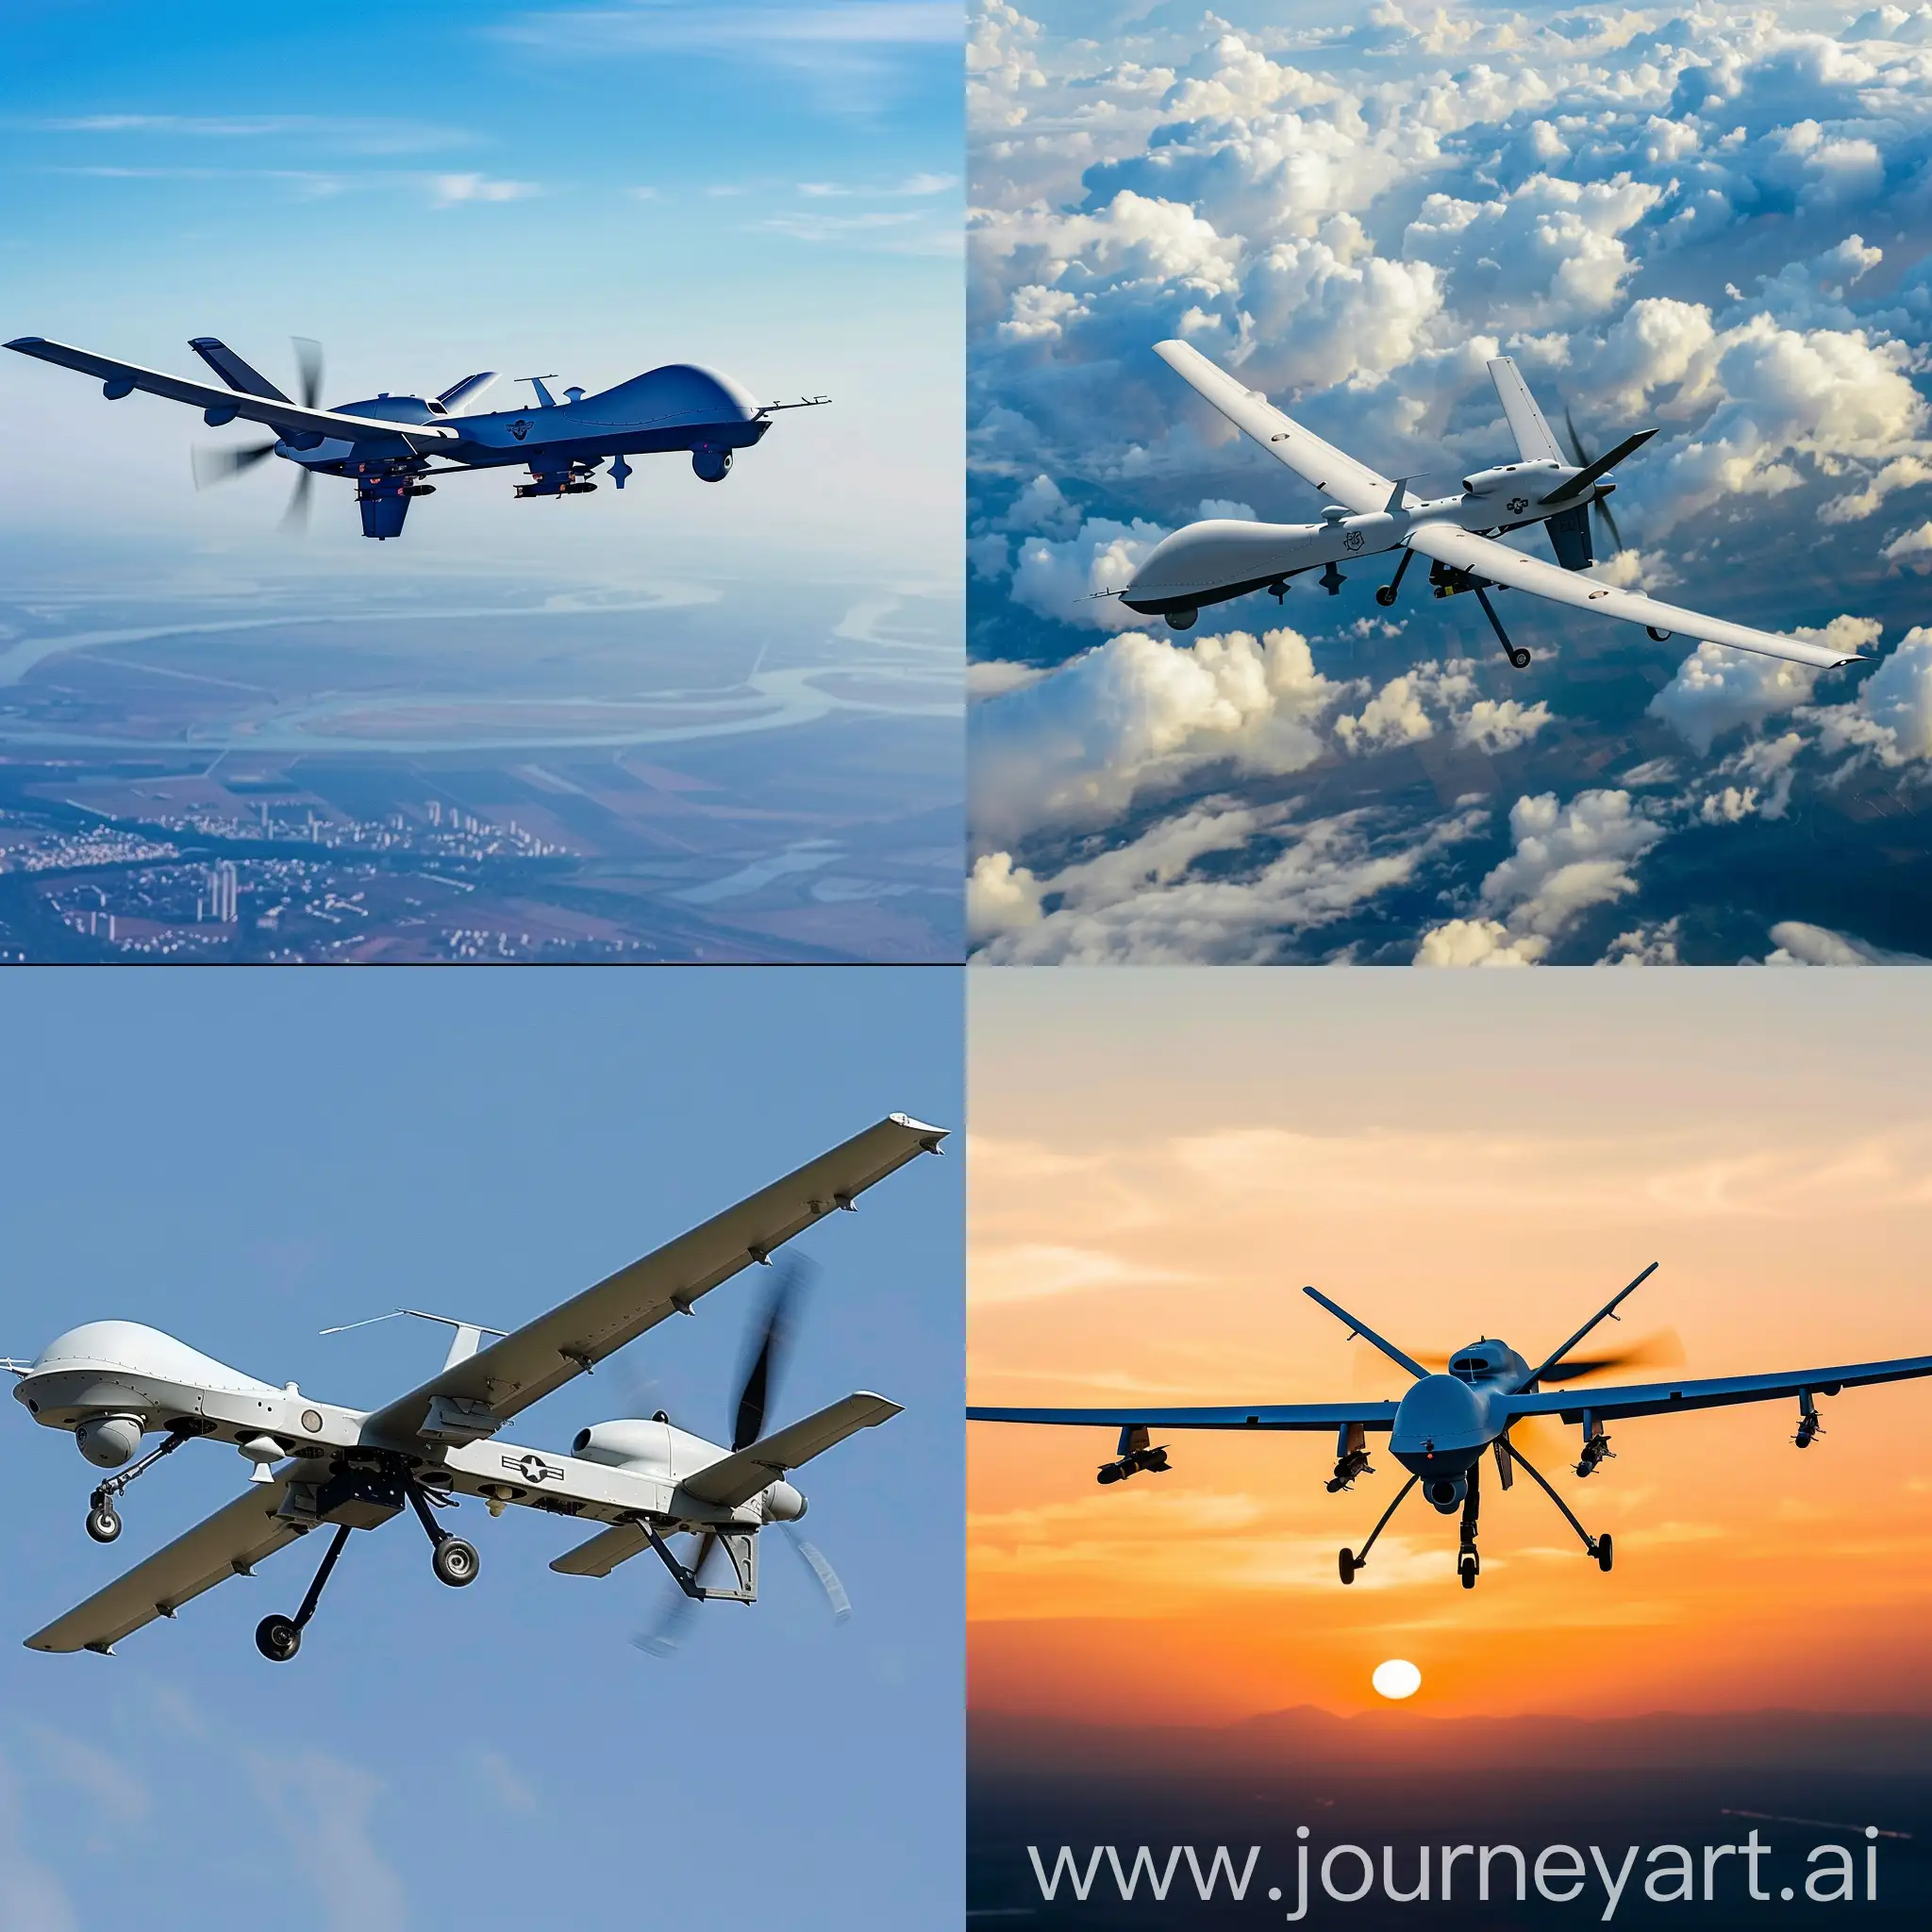 Futuristic-Drone-Model-V6-in-Aerial-Capture